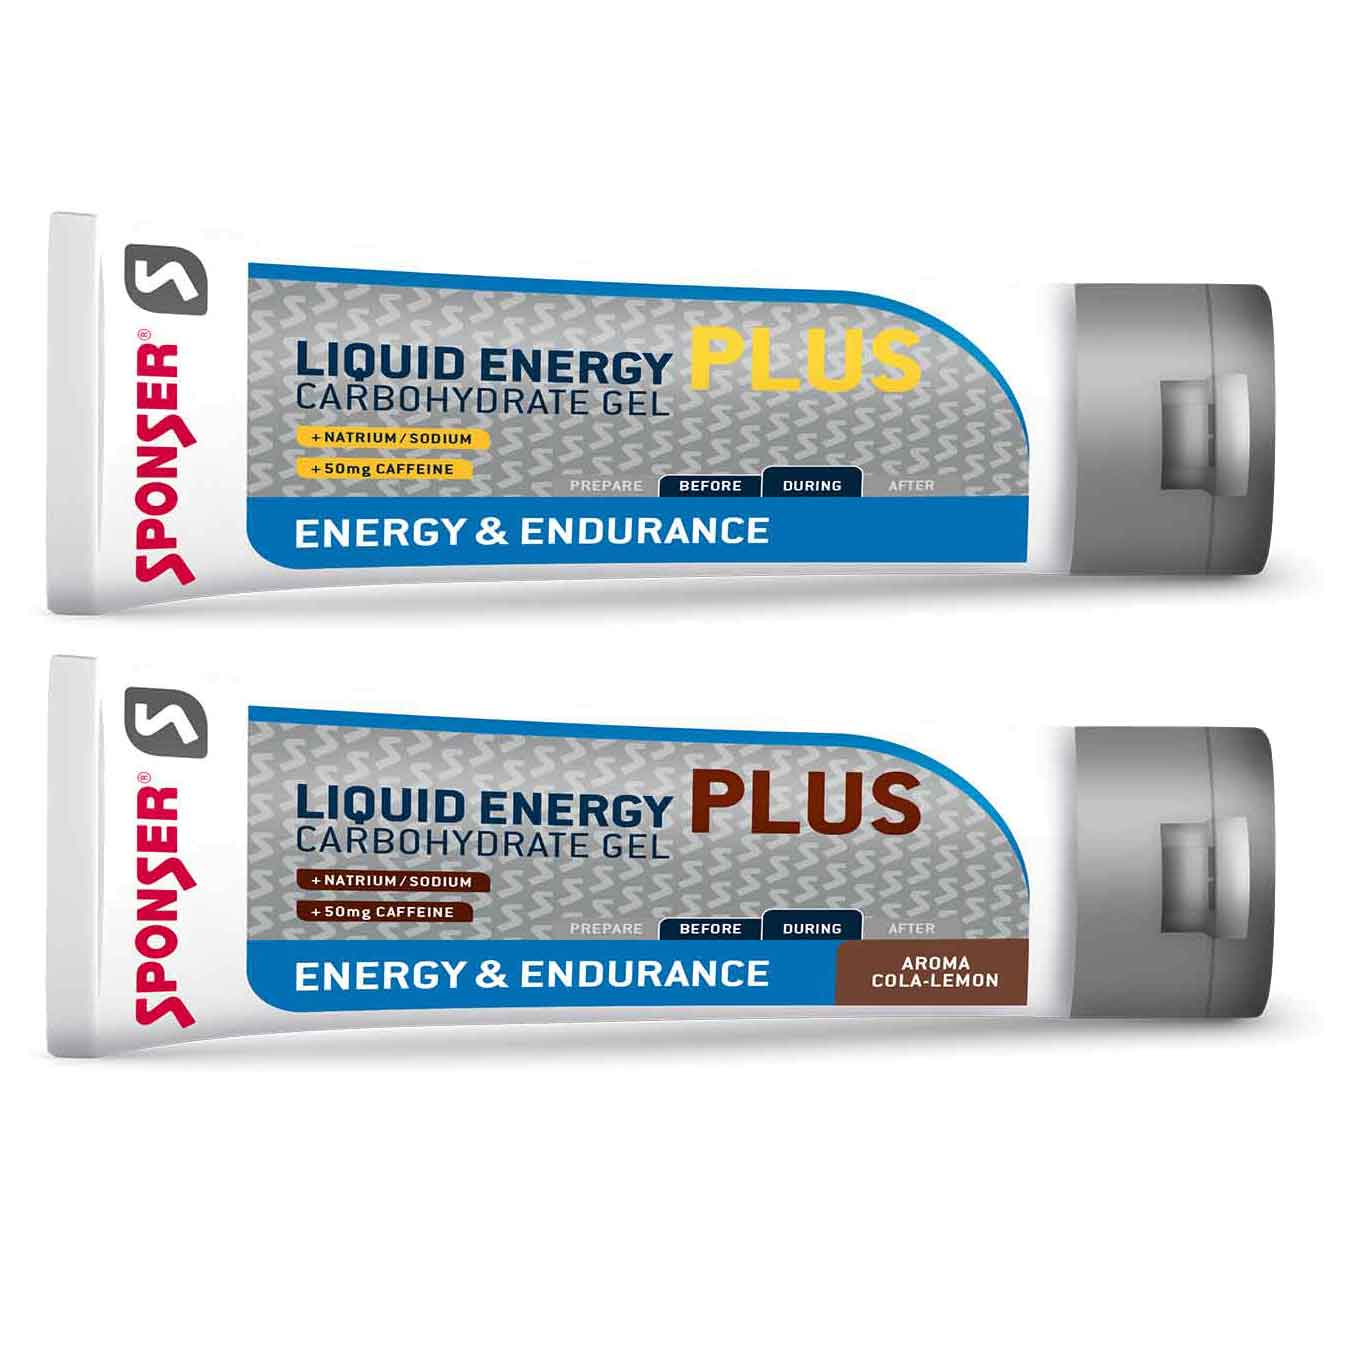 Productfoto van SPONSER Liquid Energy Plus - Koolhydraat Gel + Cafeïne - Tube - 70g